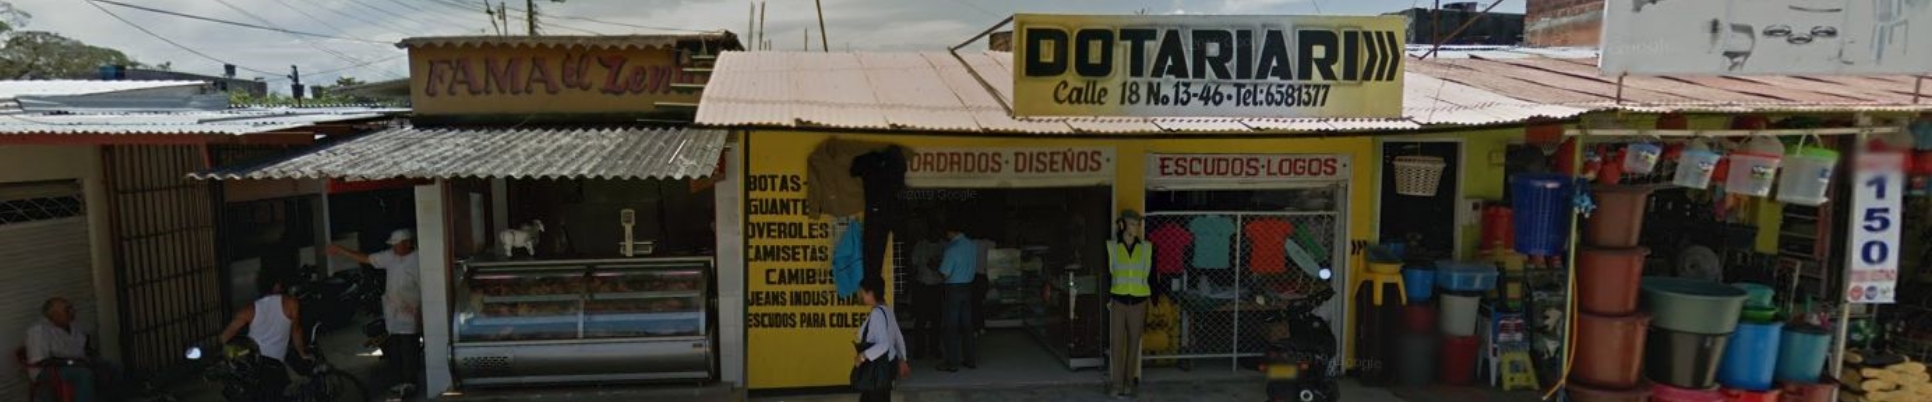 Dotariari Uniformes y Bordados Granada, Meta, Colombia